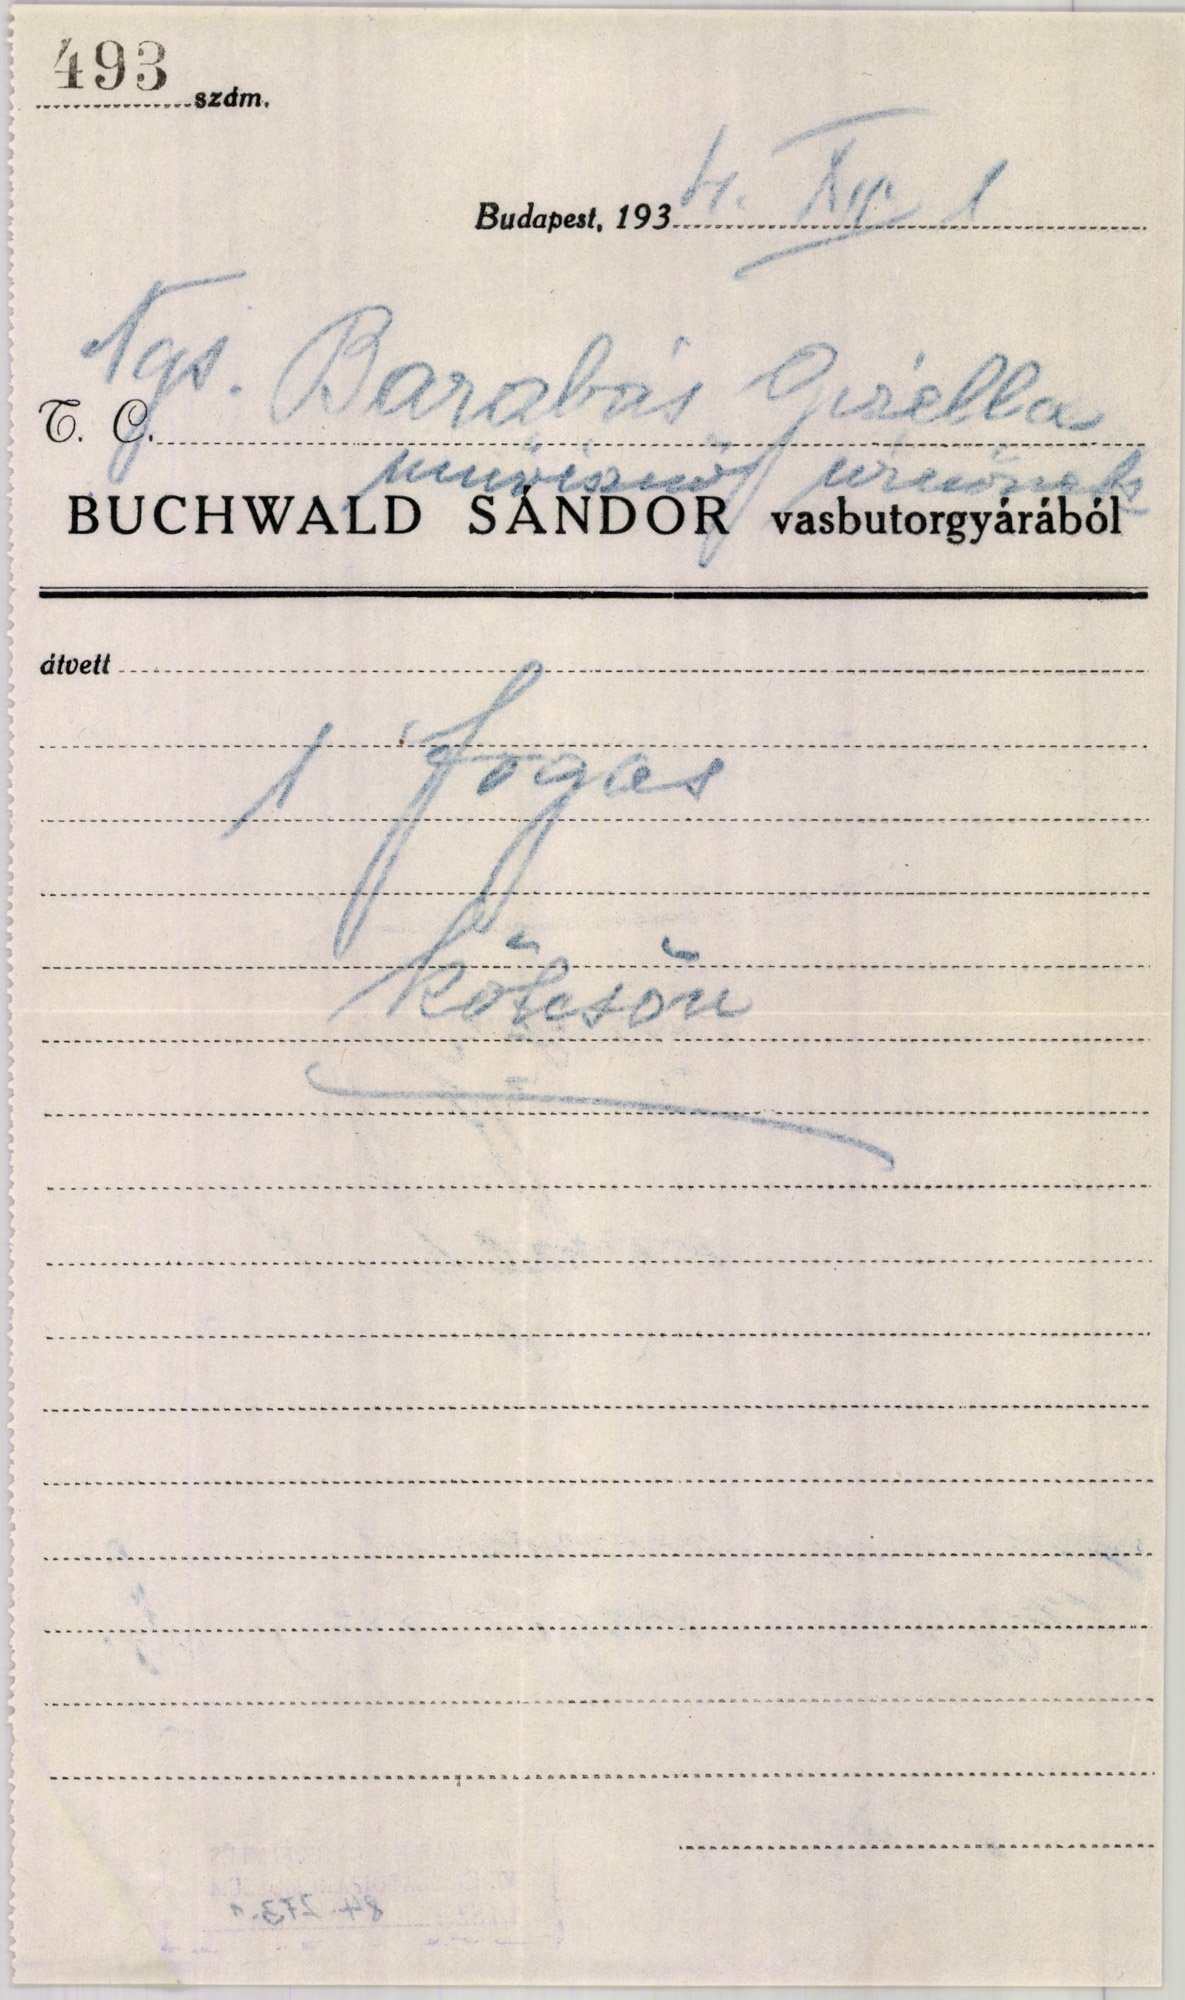 Buchwald Sándor vasbutorgyár (Magyar Kereskedelmi és Vendéglátóipari Múzeum CC BY-NC-SA)